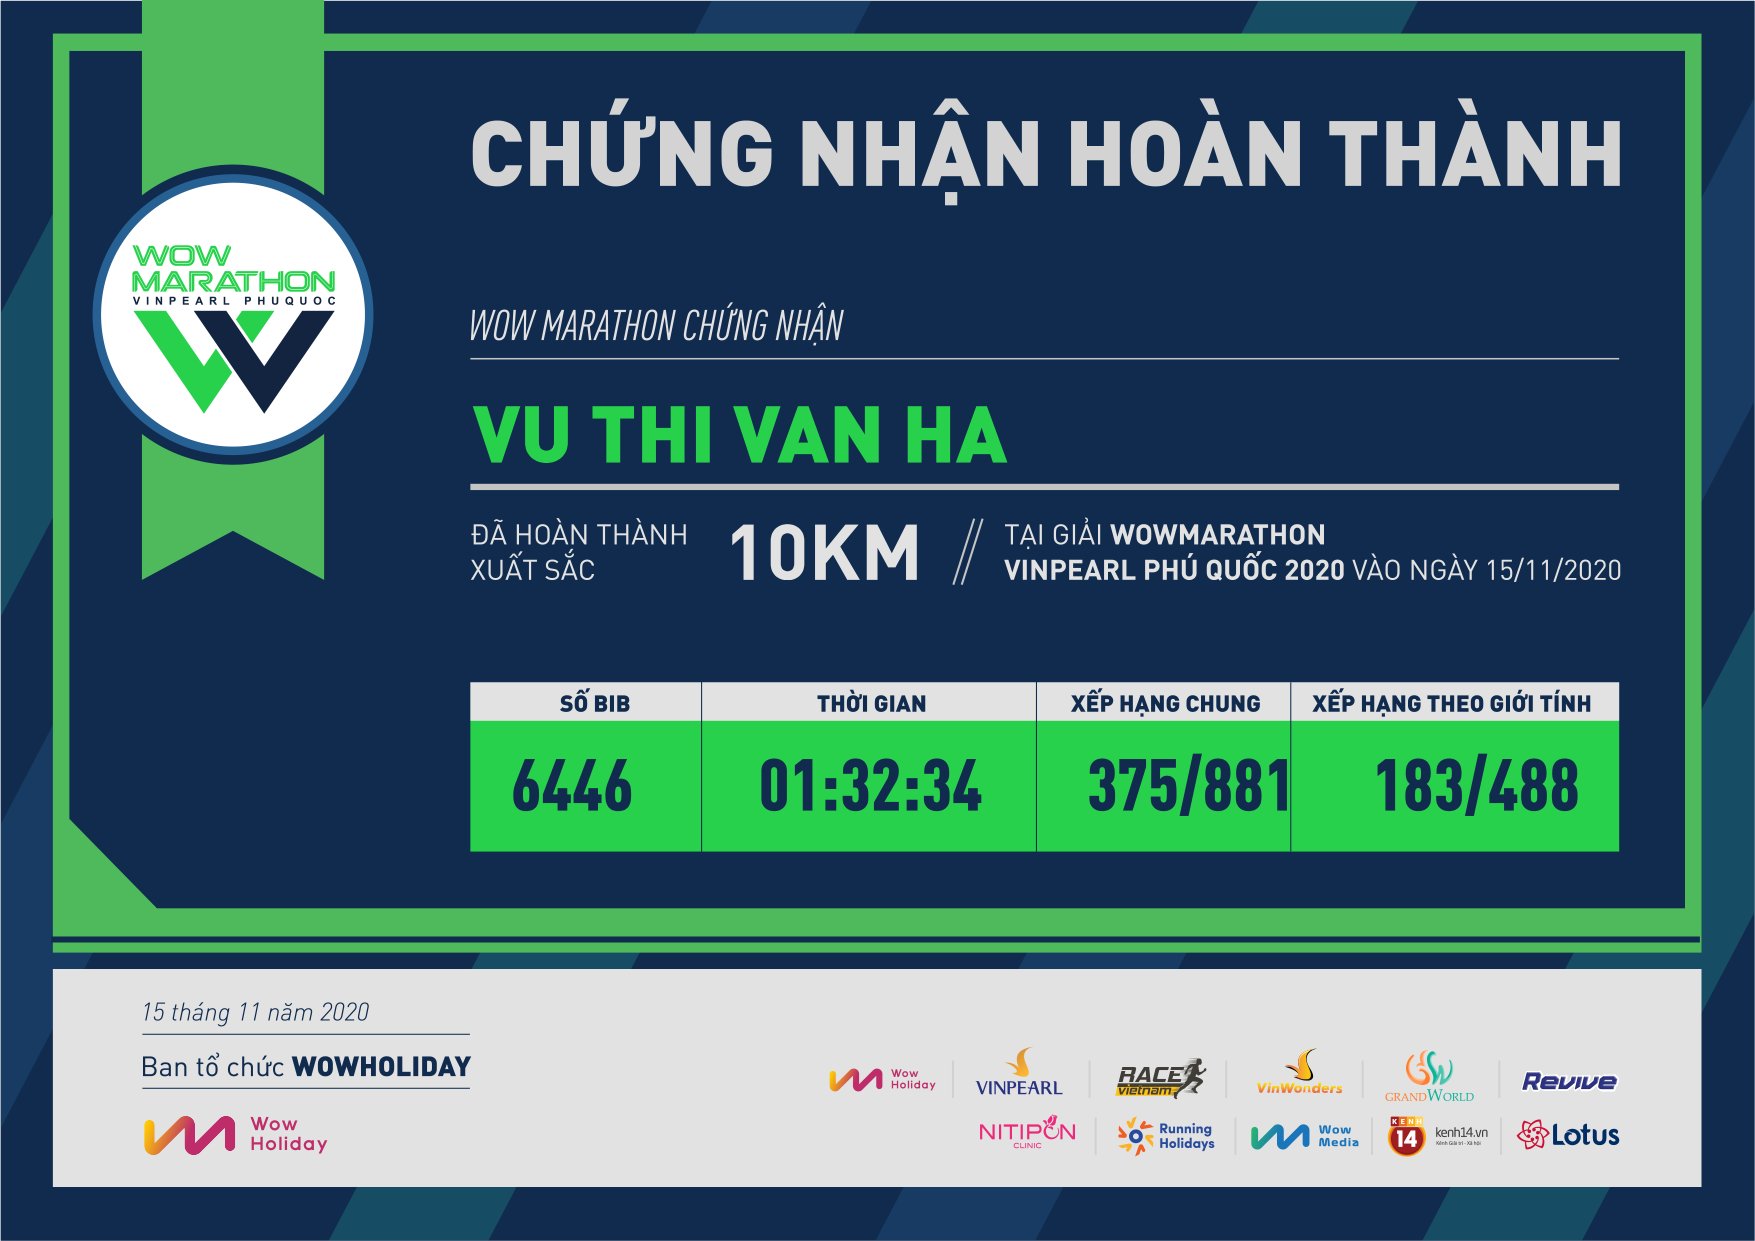 6446 - Vu Thi Van Ha